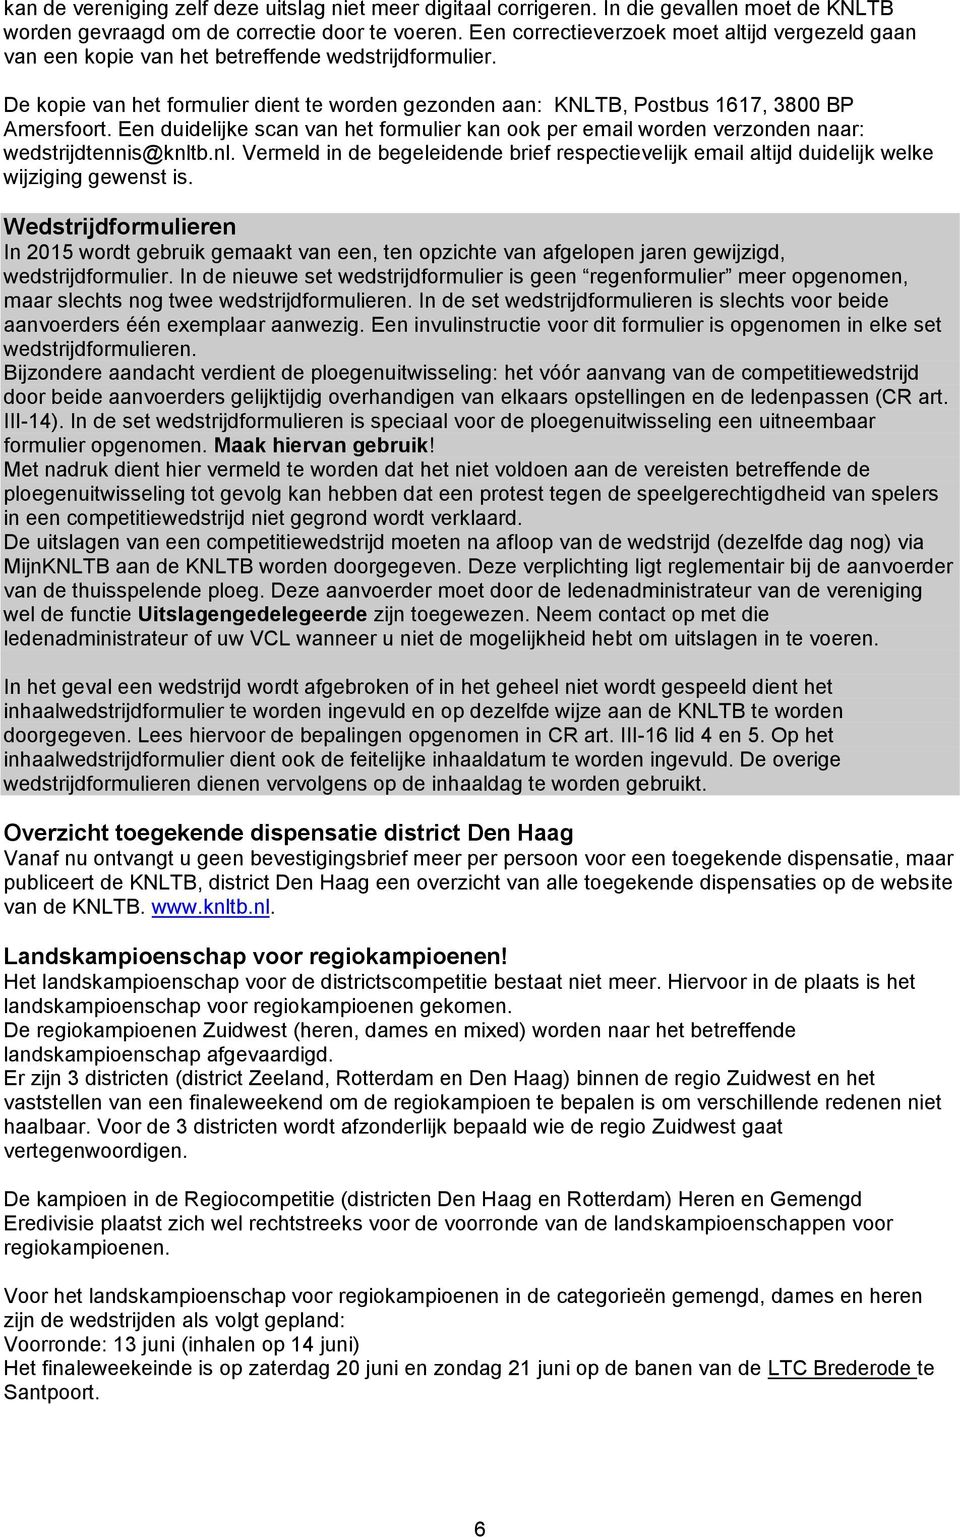 Een duidelijke scan van het formulier kan ook per email worden verzonden naar: wedstrijdtennis@knltb.nl. Vermeld in de begeleidende brief respectievelijk email altijd duidelijk welke wijziging gewenst is.